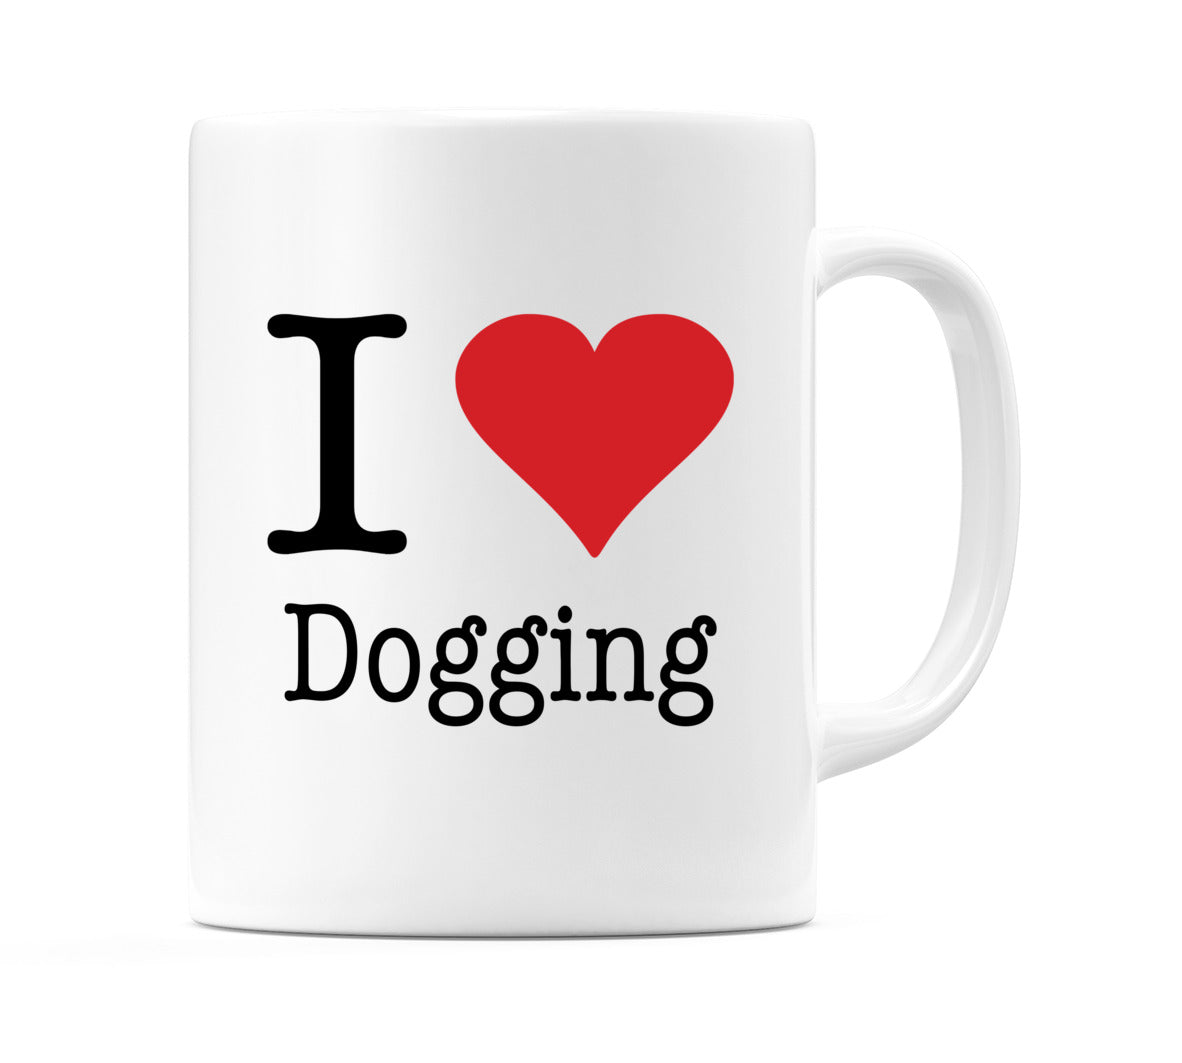 I Love Dogging Mug